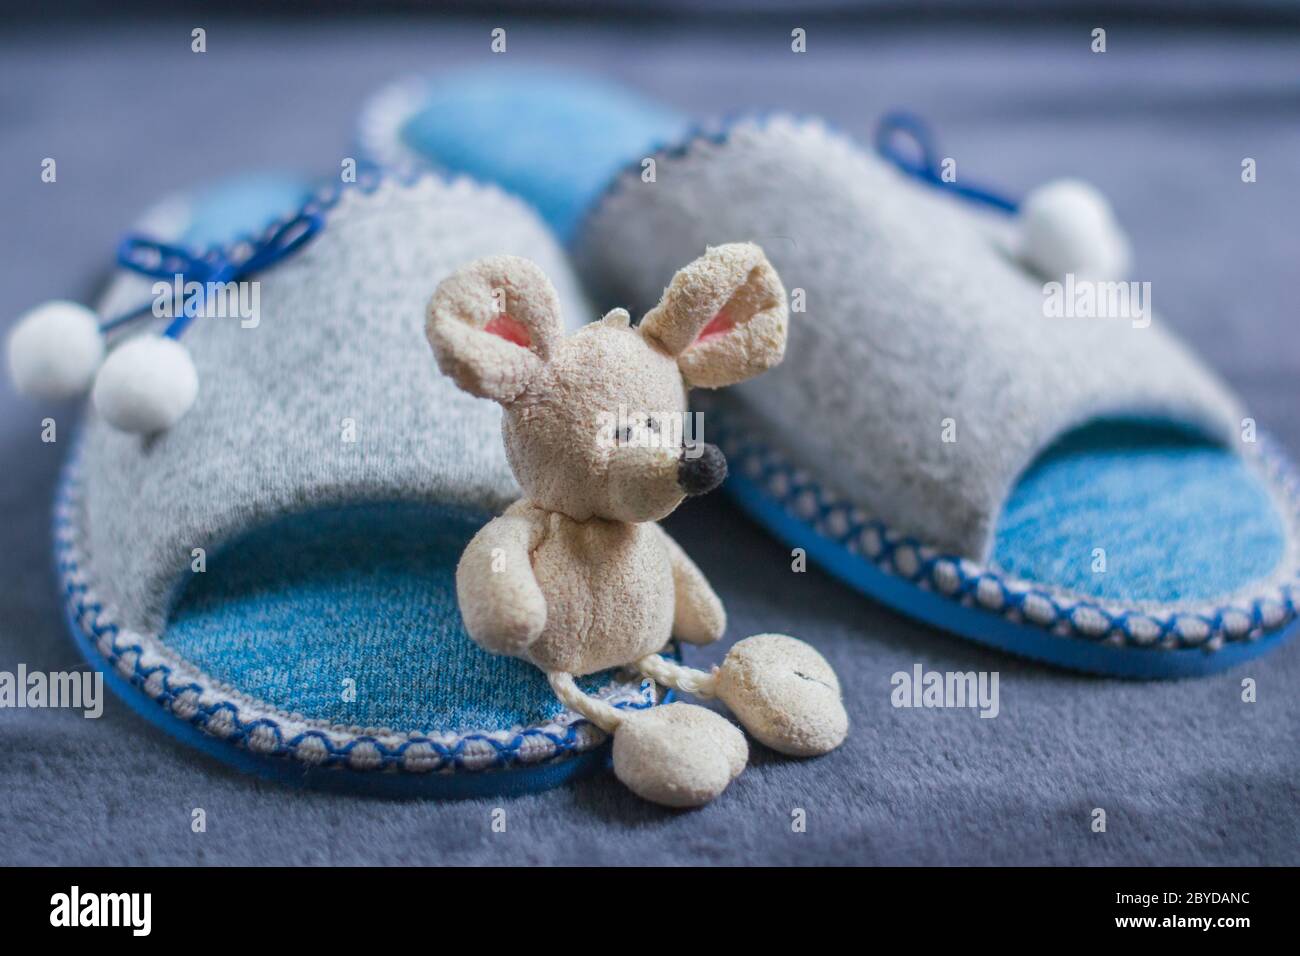 Eine Spielzeug-Maus sitzt auf Pantoffeln mit Pompons stehen auf einem  flauschigen Teppich. Startseite Frauen oder Kinder Kleidung und Schuhe. Das  Konzept der Wärme zu Hause Stockfotografie - Alamy